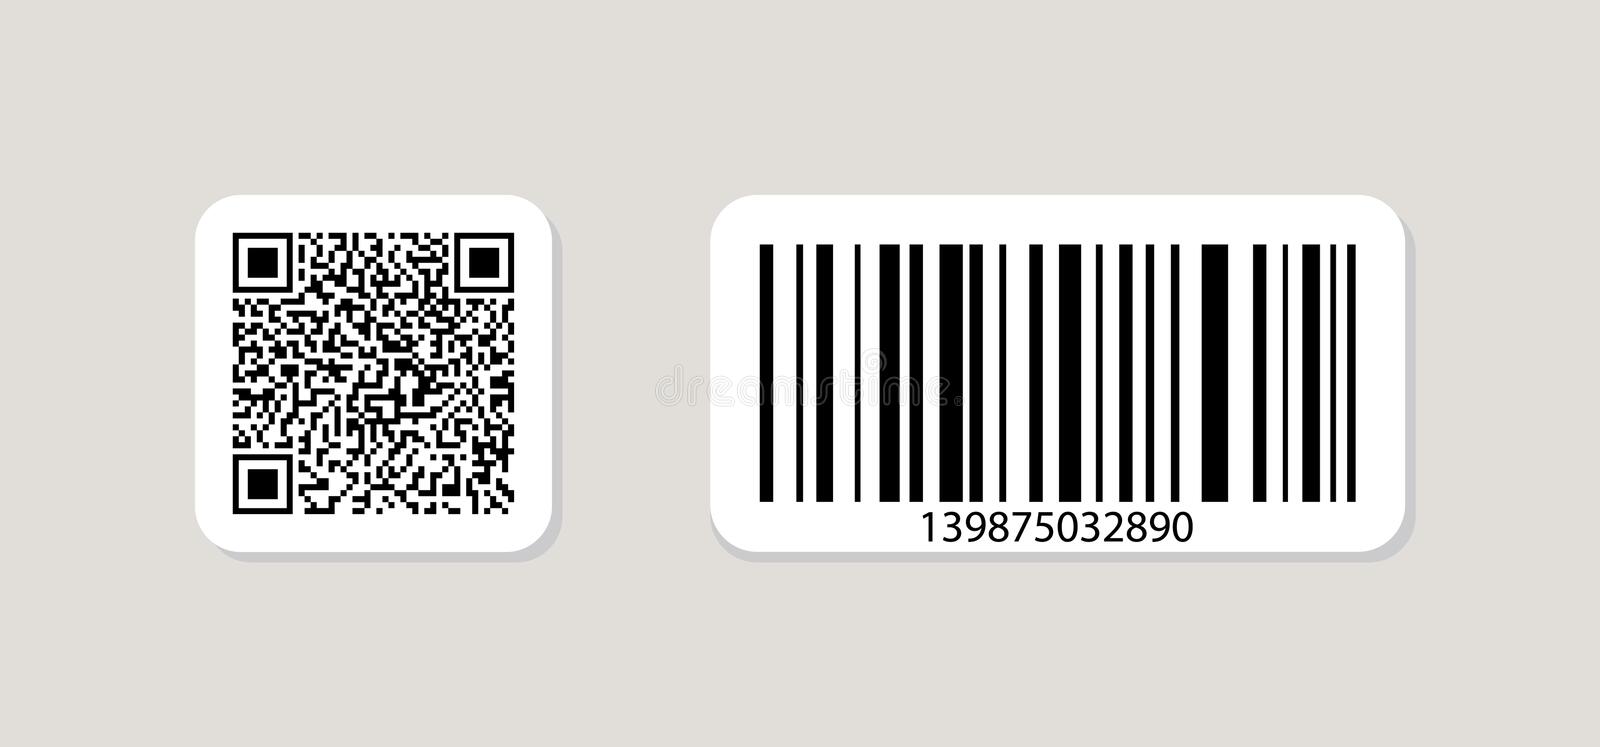 ung-dung-quan-ly-kho-bang-qr-code-barcode